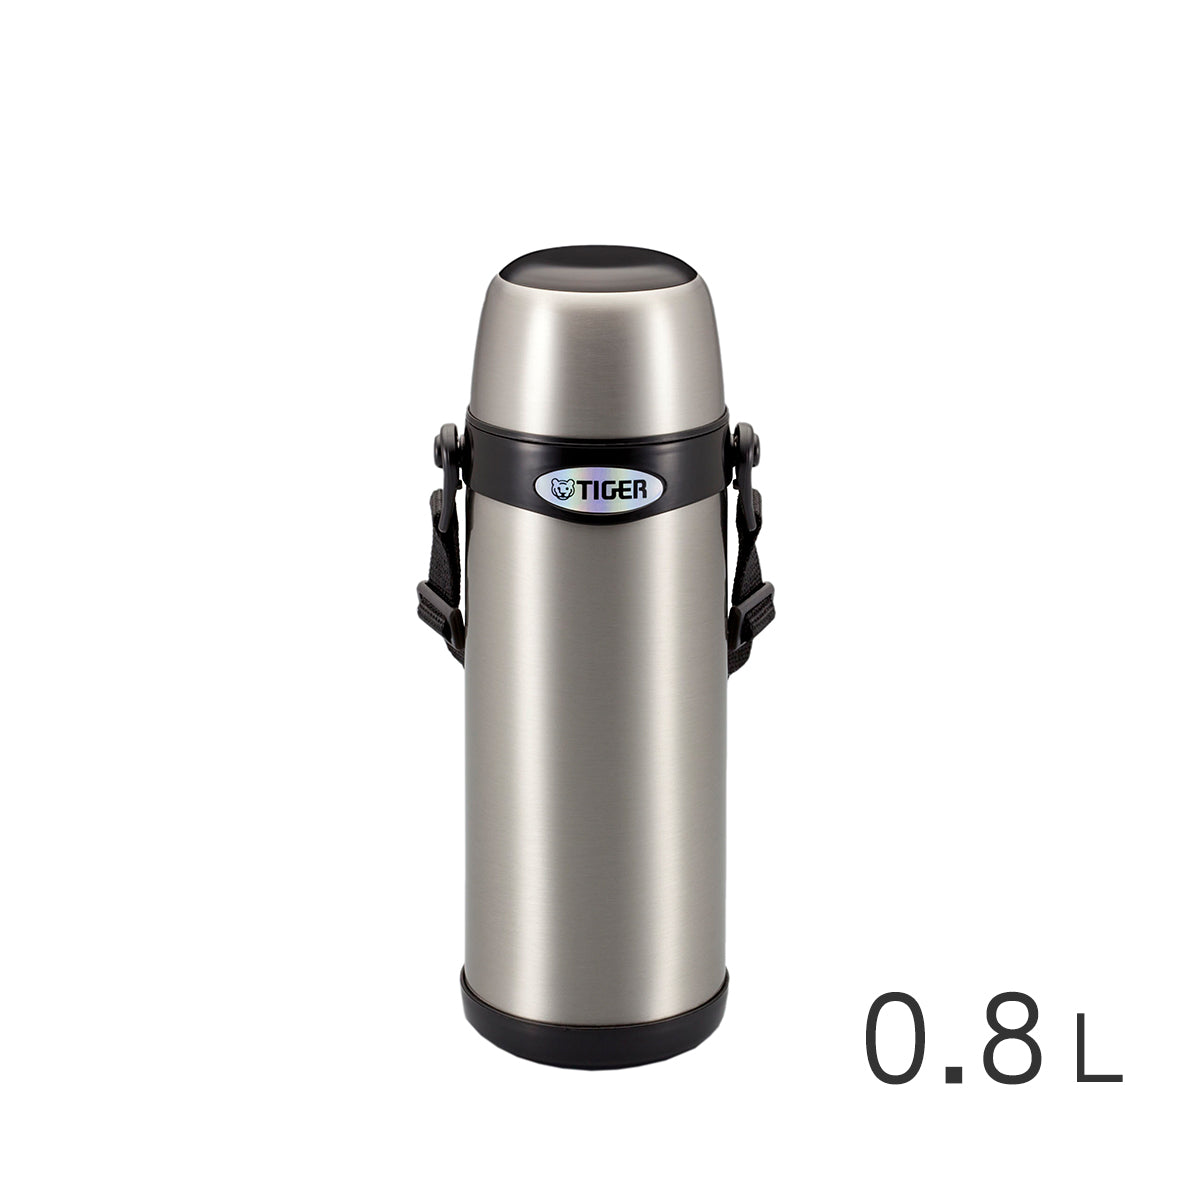 【背帶式】杯蓋型不鏽鋼真空保溫瓶0.8L (MBI-A080)